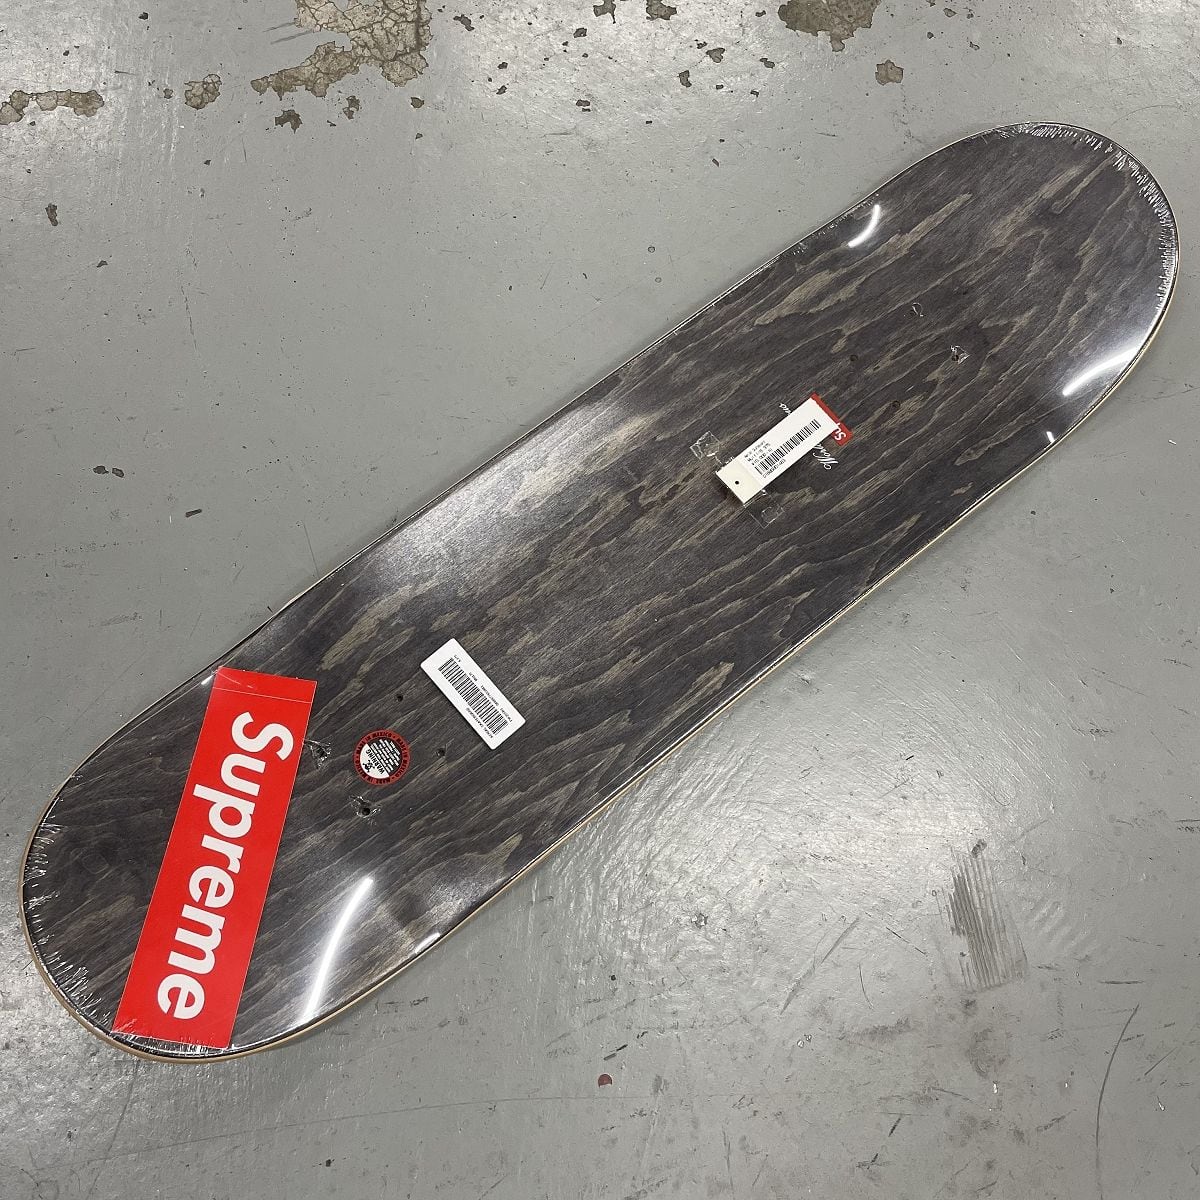 格安購入可能商品 Supreme Aerial Skateboard deck エアリアル